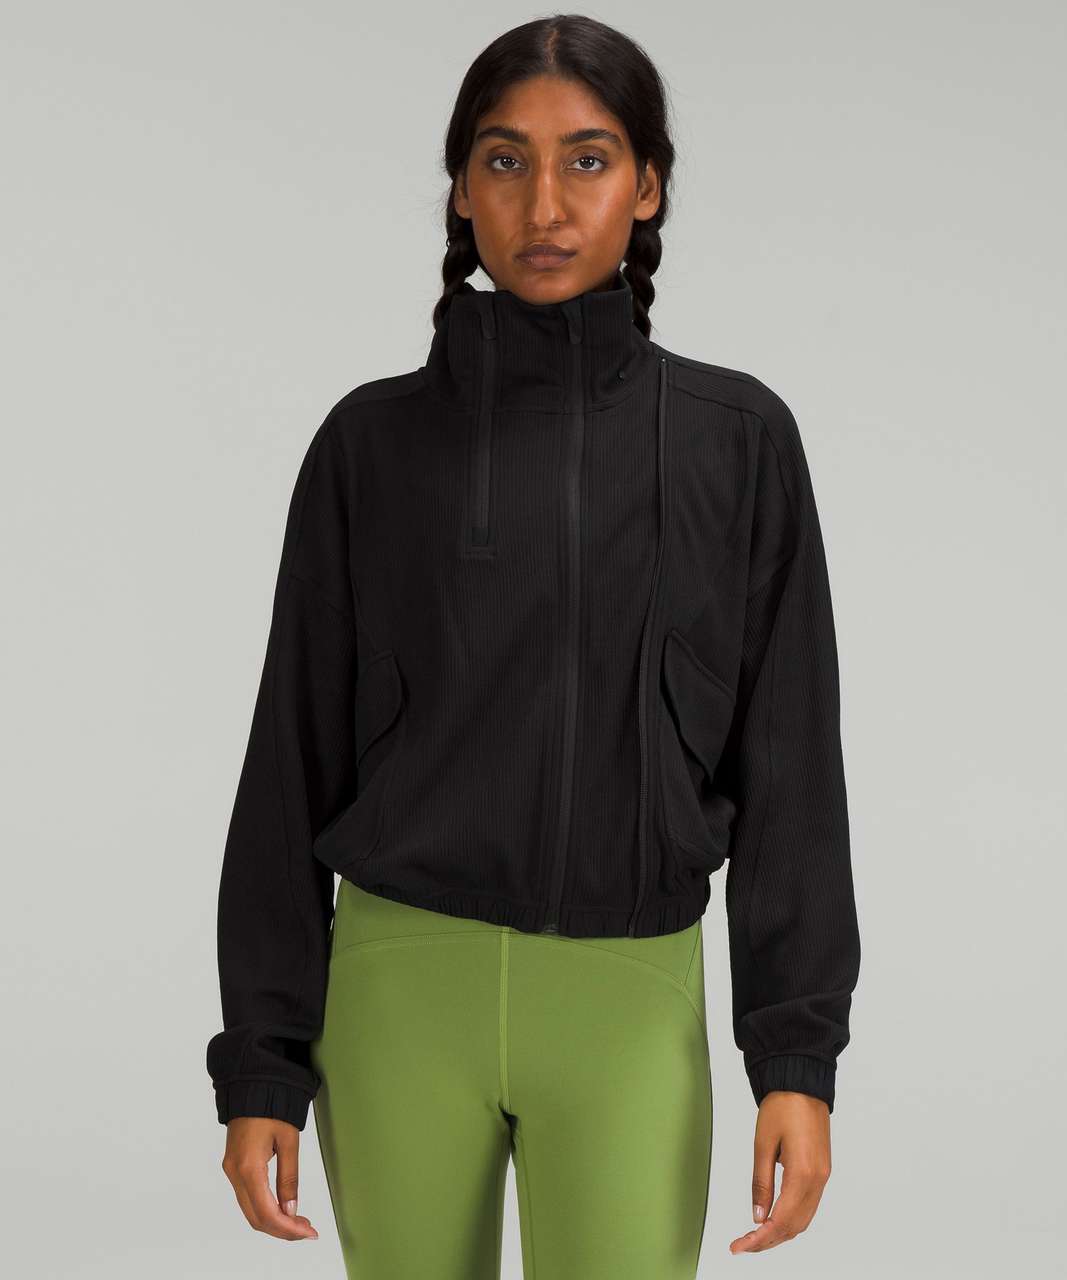 lululemon athletica, Jackets & Coats, Euc Lululemon Size Light  Jacketsweatshirt